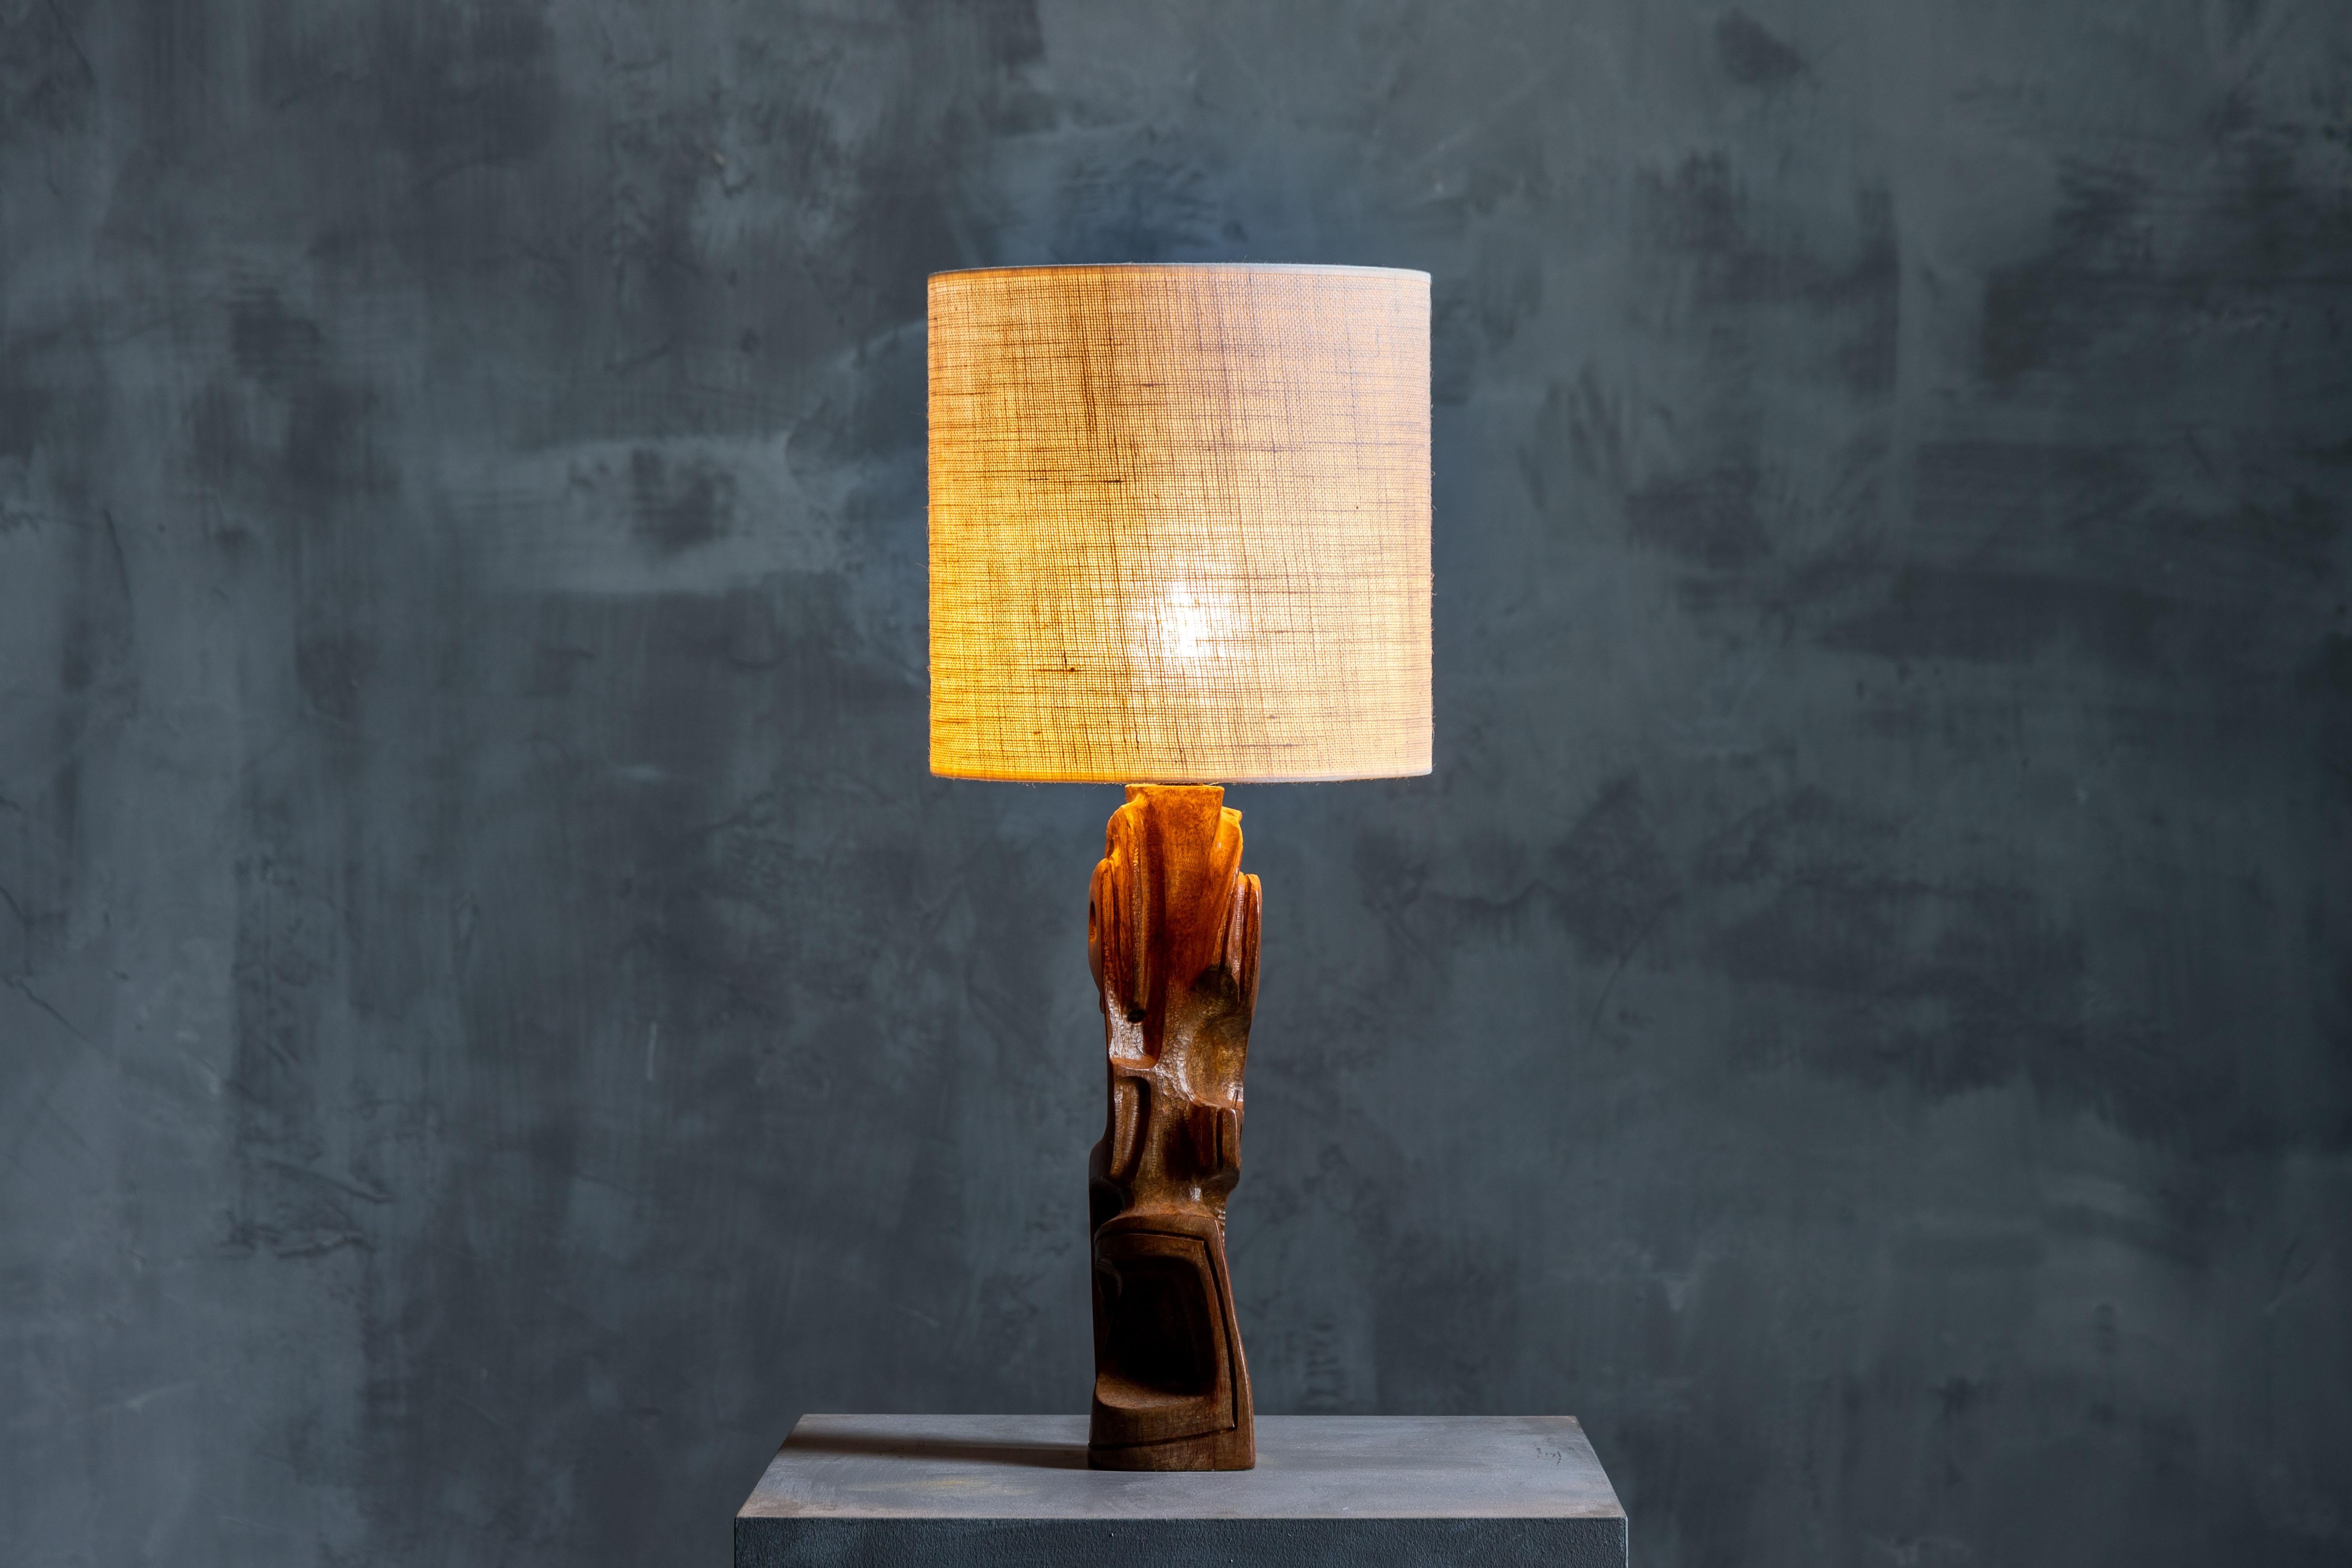 Lampe de table sculptée de Gianni datant des années 1970 en Italie, fabriquée en bois de Legno Padouk. Il présente une esthétique robuste et brutale qui captive les sens. Incarnant une ère de design audacieux et d'expression artistique, cette lampe